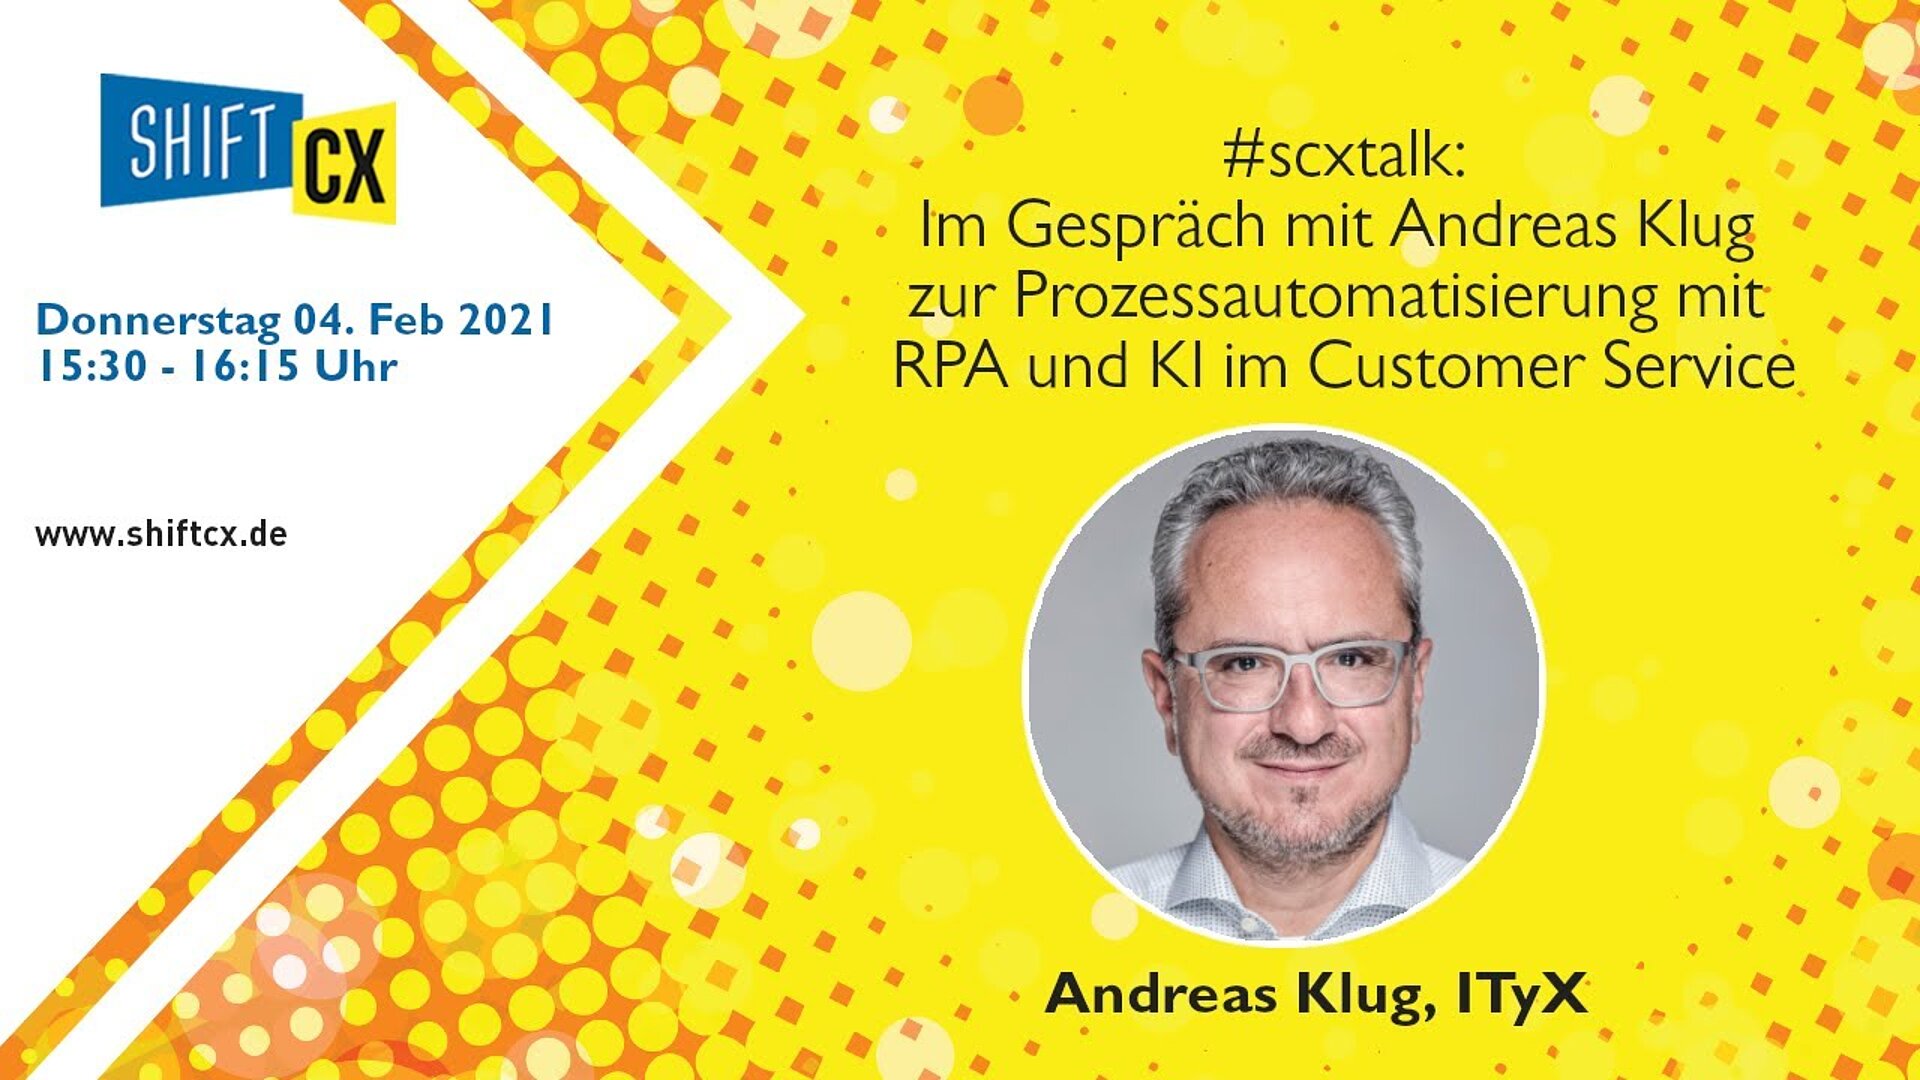 Im Gespräch mit Andreas Klug zur Prozessautomatisierung mit RPA und KI im Customer Service